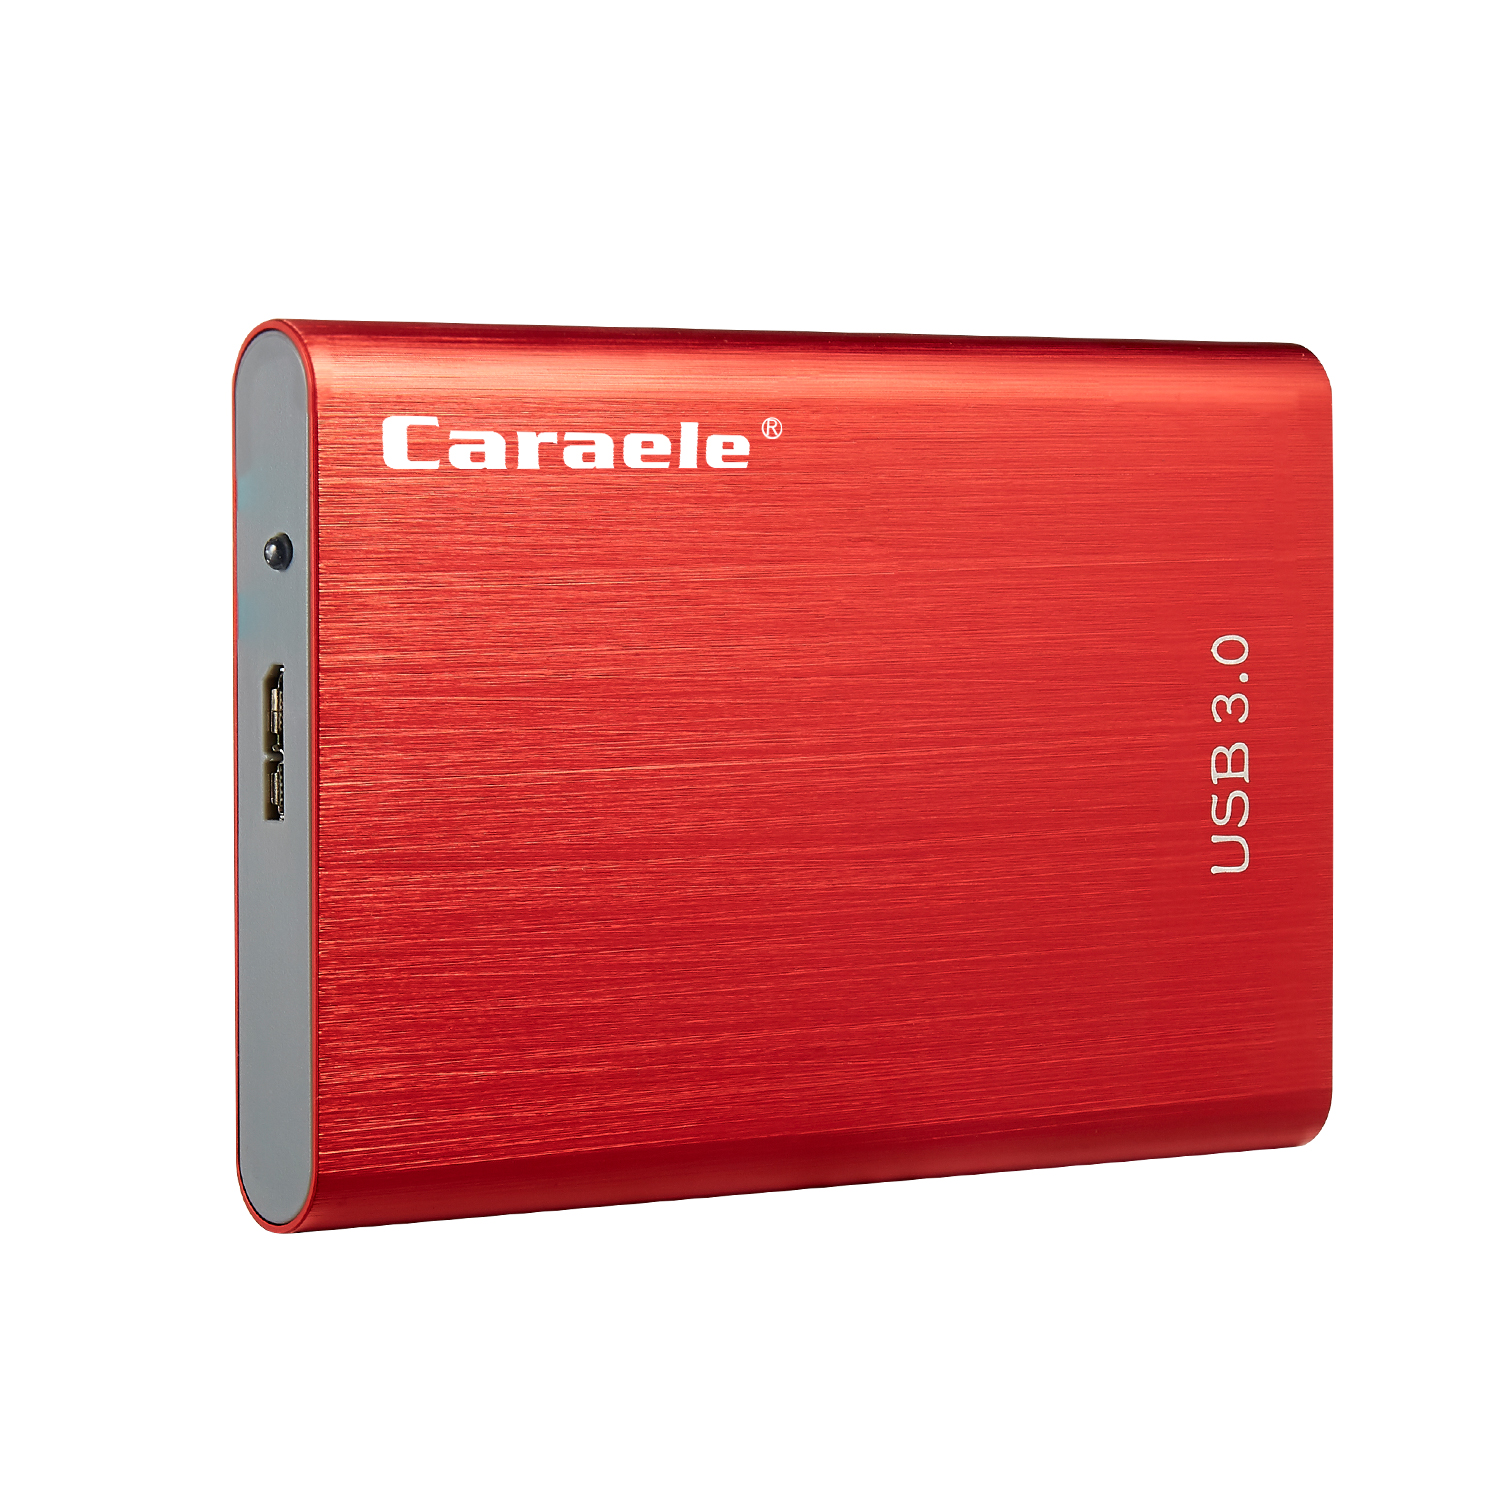 

Мобильный жесткий диск Caraele H-4 USB 3.0 для Mac Внешний портативный Механический Мобильный жесткий диск 500 ГБ / 1 ТБ / 2 ТБ - красный